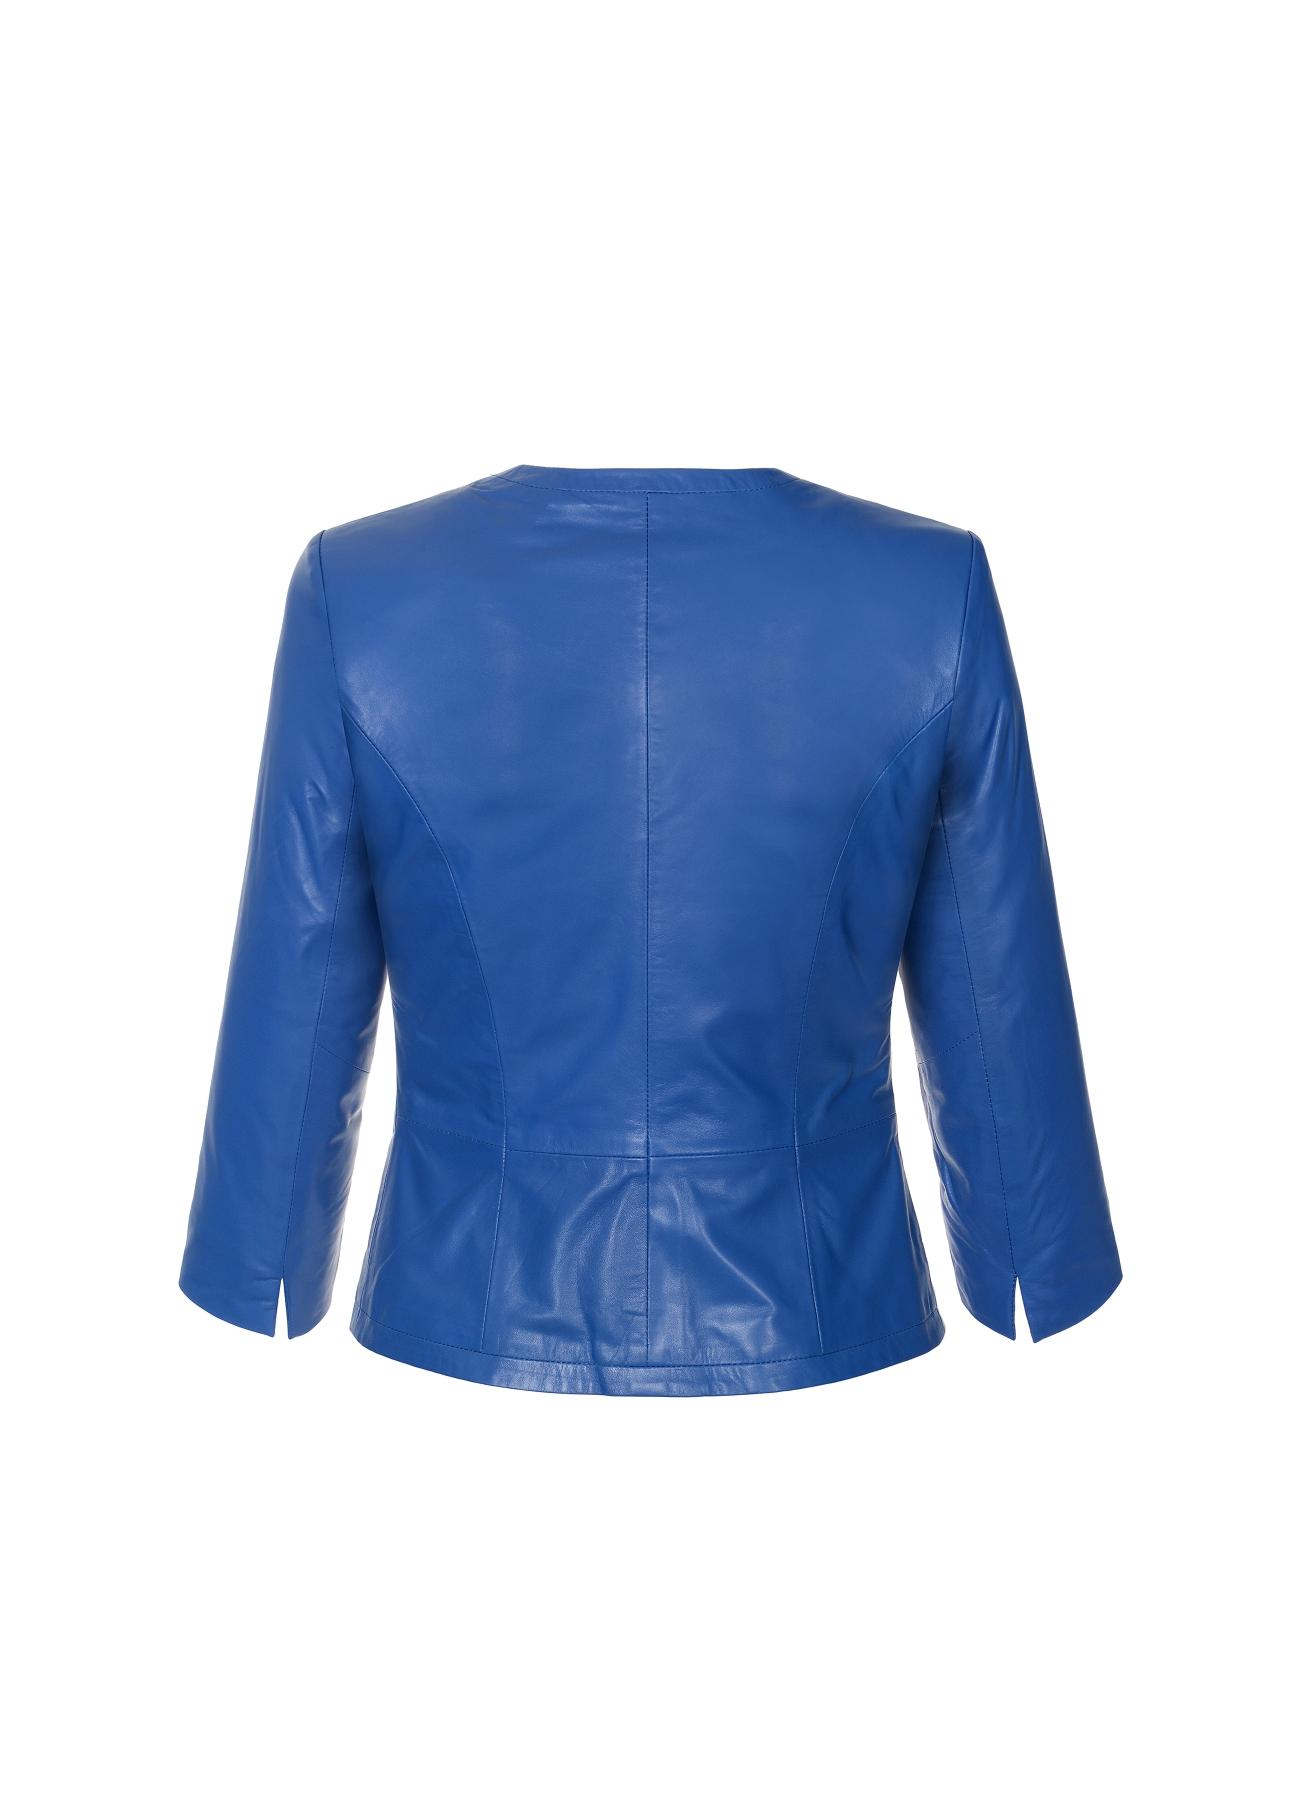 Taliowana niebieska kurtka skórzana damska KURDS-0082-5448(W19)